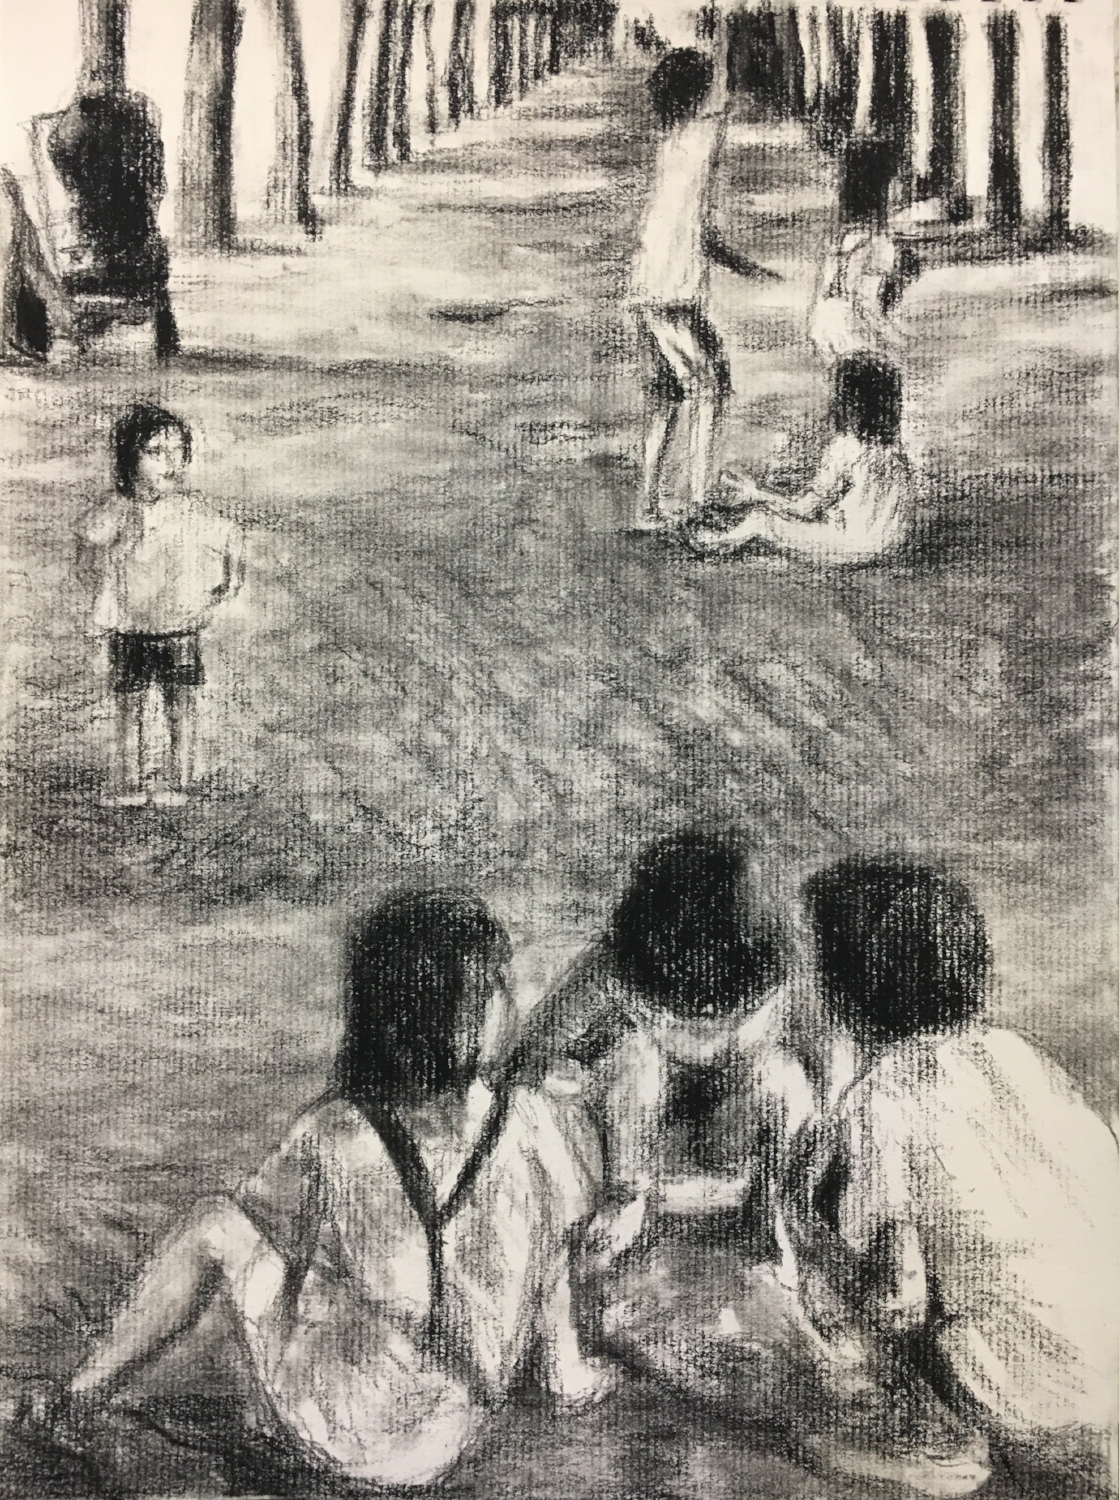 Kids at play in Palais Royal